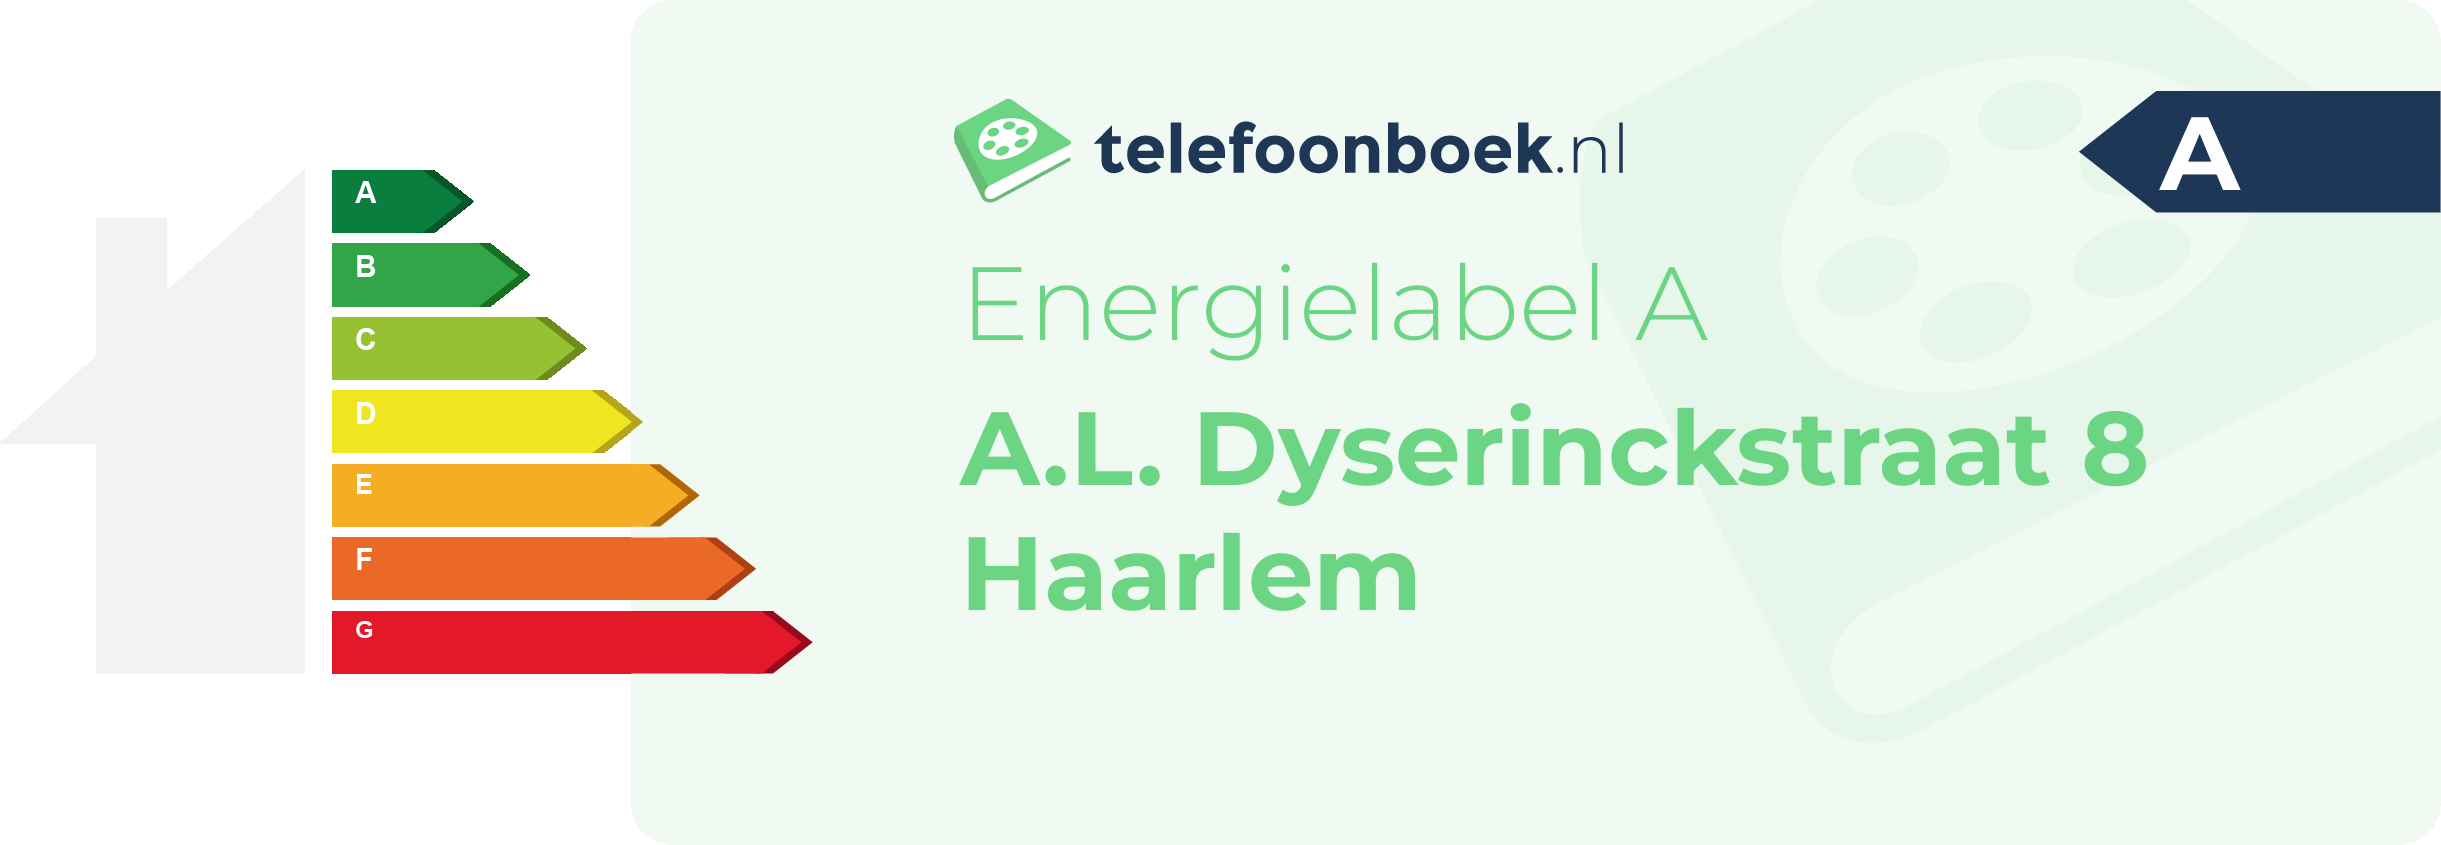 Energielabel A.L. Dyserinckstraat 8 Haarlem